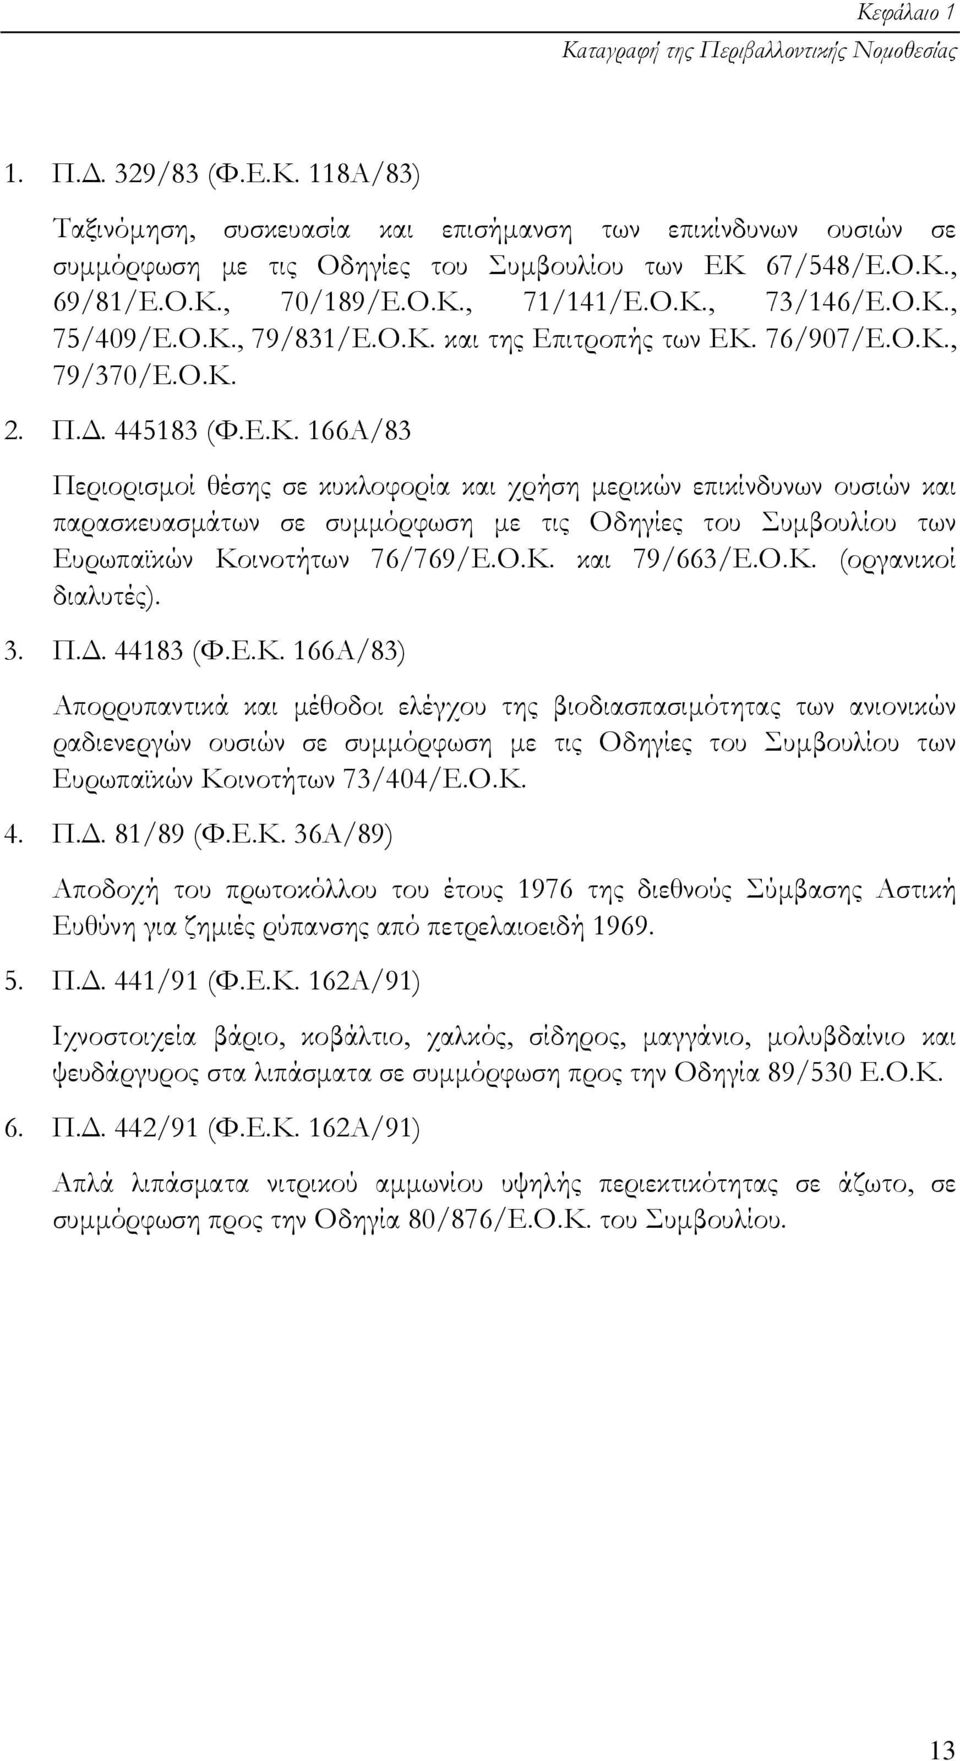 Ο.Κ. και 79/663/Ε.Ο.Κ. (οργανικοί διαλυτές). 3. Π.. 44183 (Φ.Ε.Κ. 166Α/83) Απορρυπαντικά και µέθοδοι ελέγχου της βιοδιασπασιµότητας των ανιονικών ραδιενεργών ουσιών σε συµµόρφωση µε τις Οδηγίες του Συµβουλίου των Ευρωπαϊκών Κοινοτήτων 73/404/Ε.